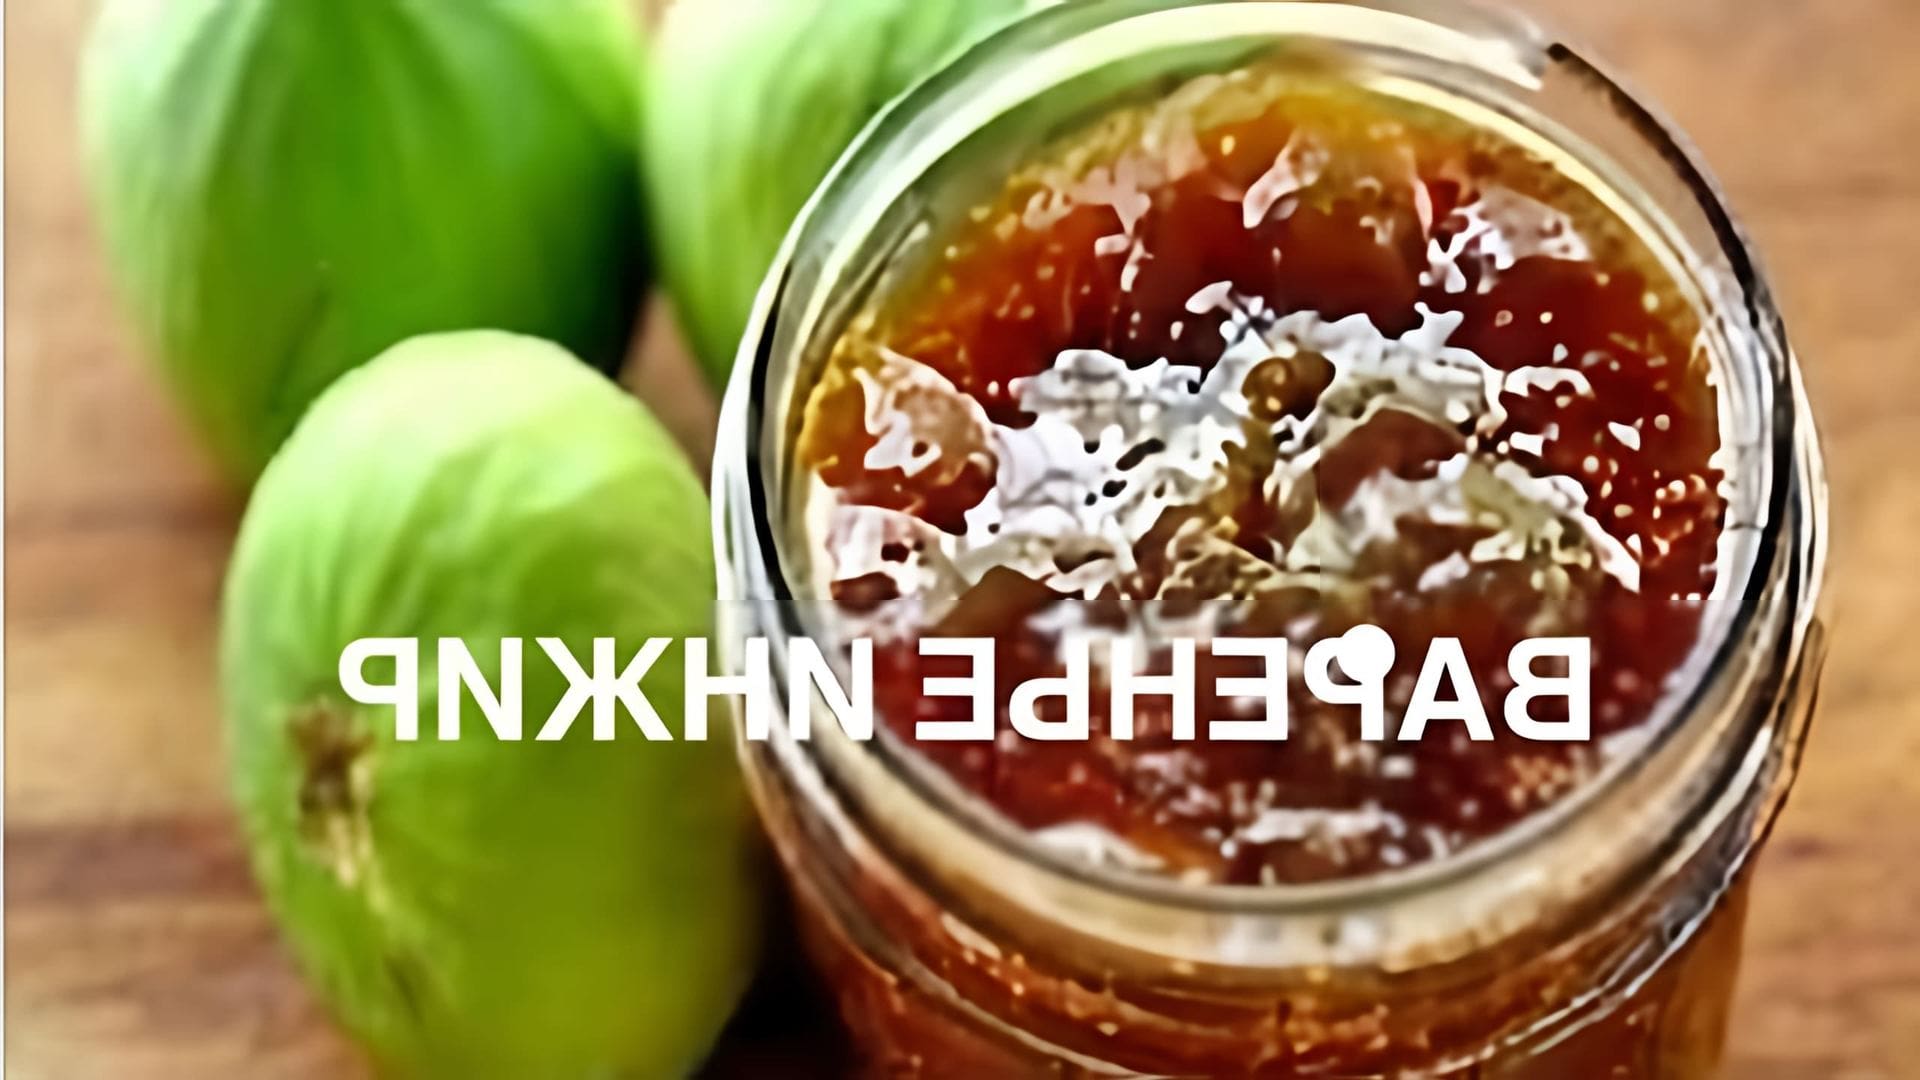 В этом видео демонстрируется процесс приготовления варенья из инжира с лимоном